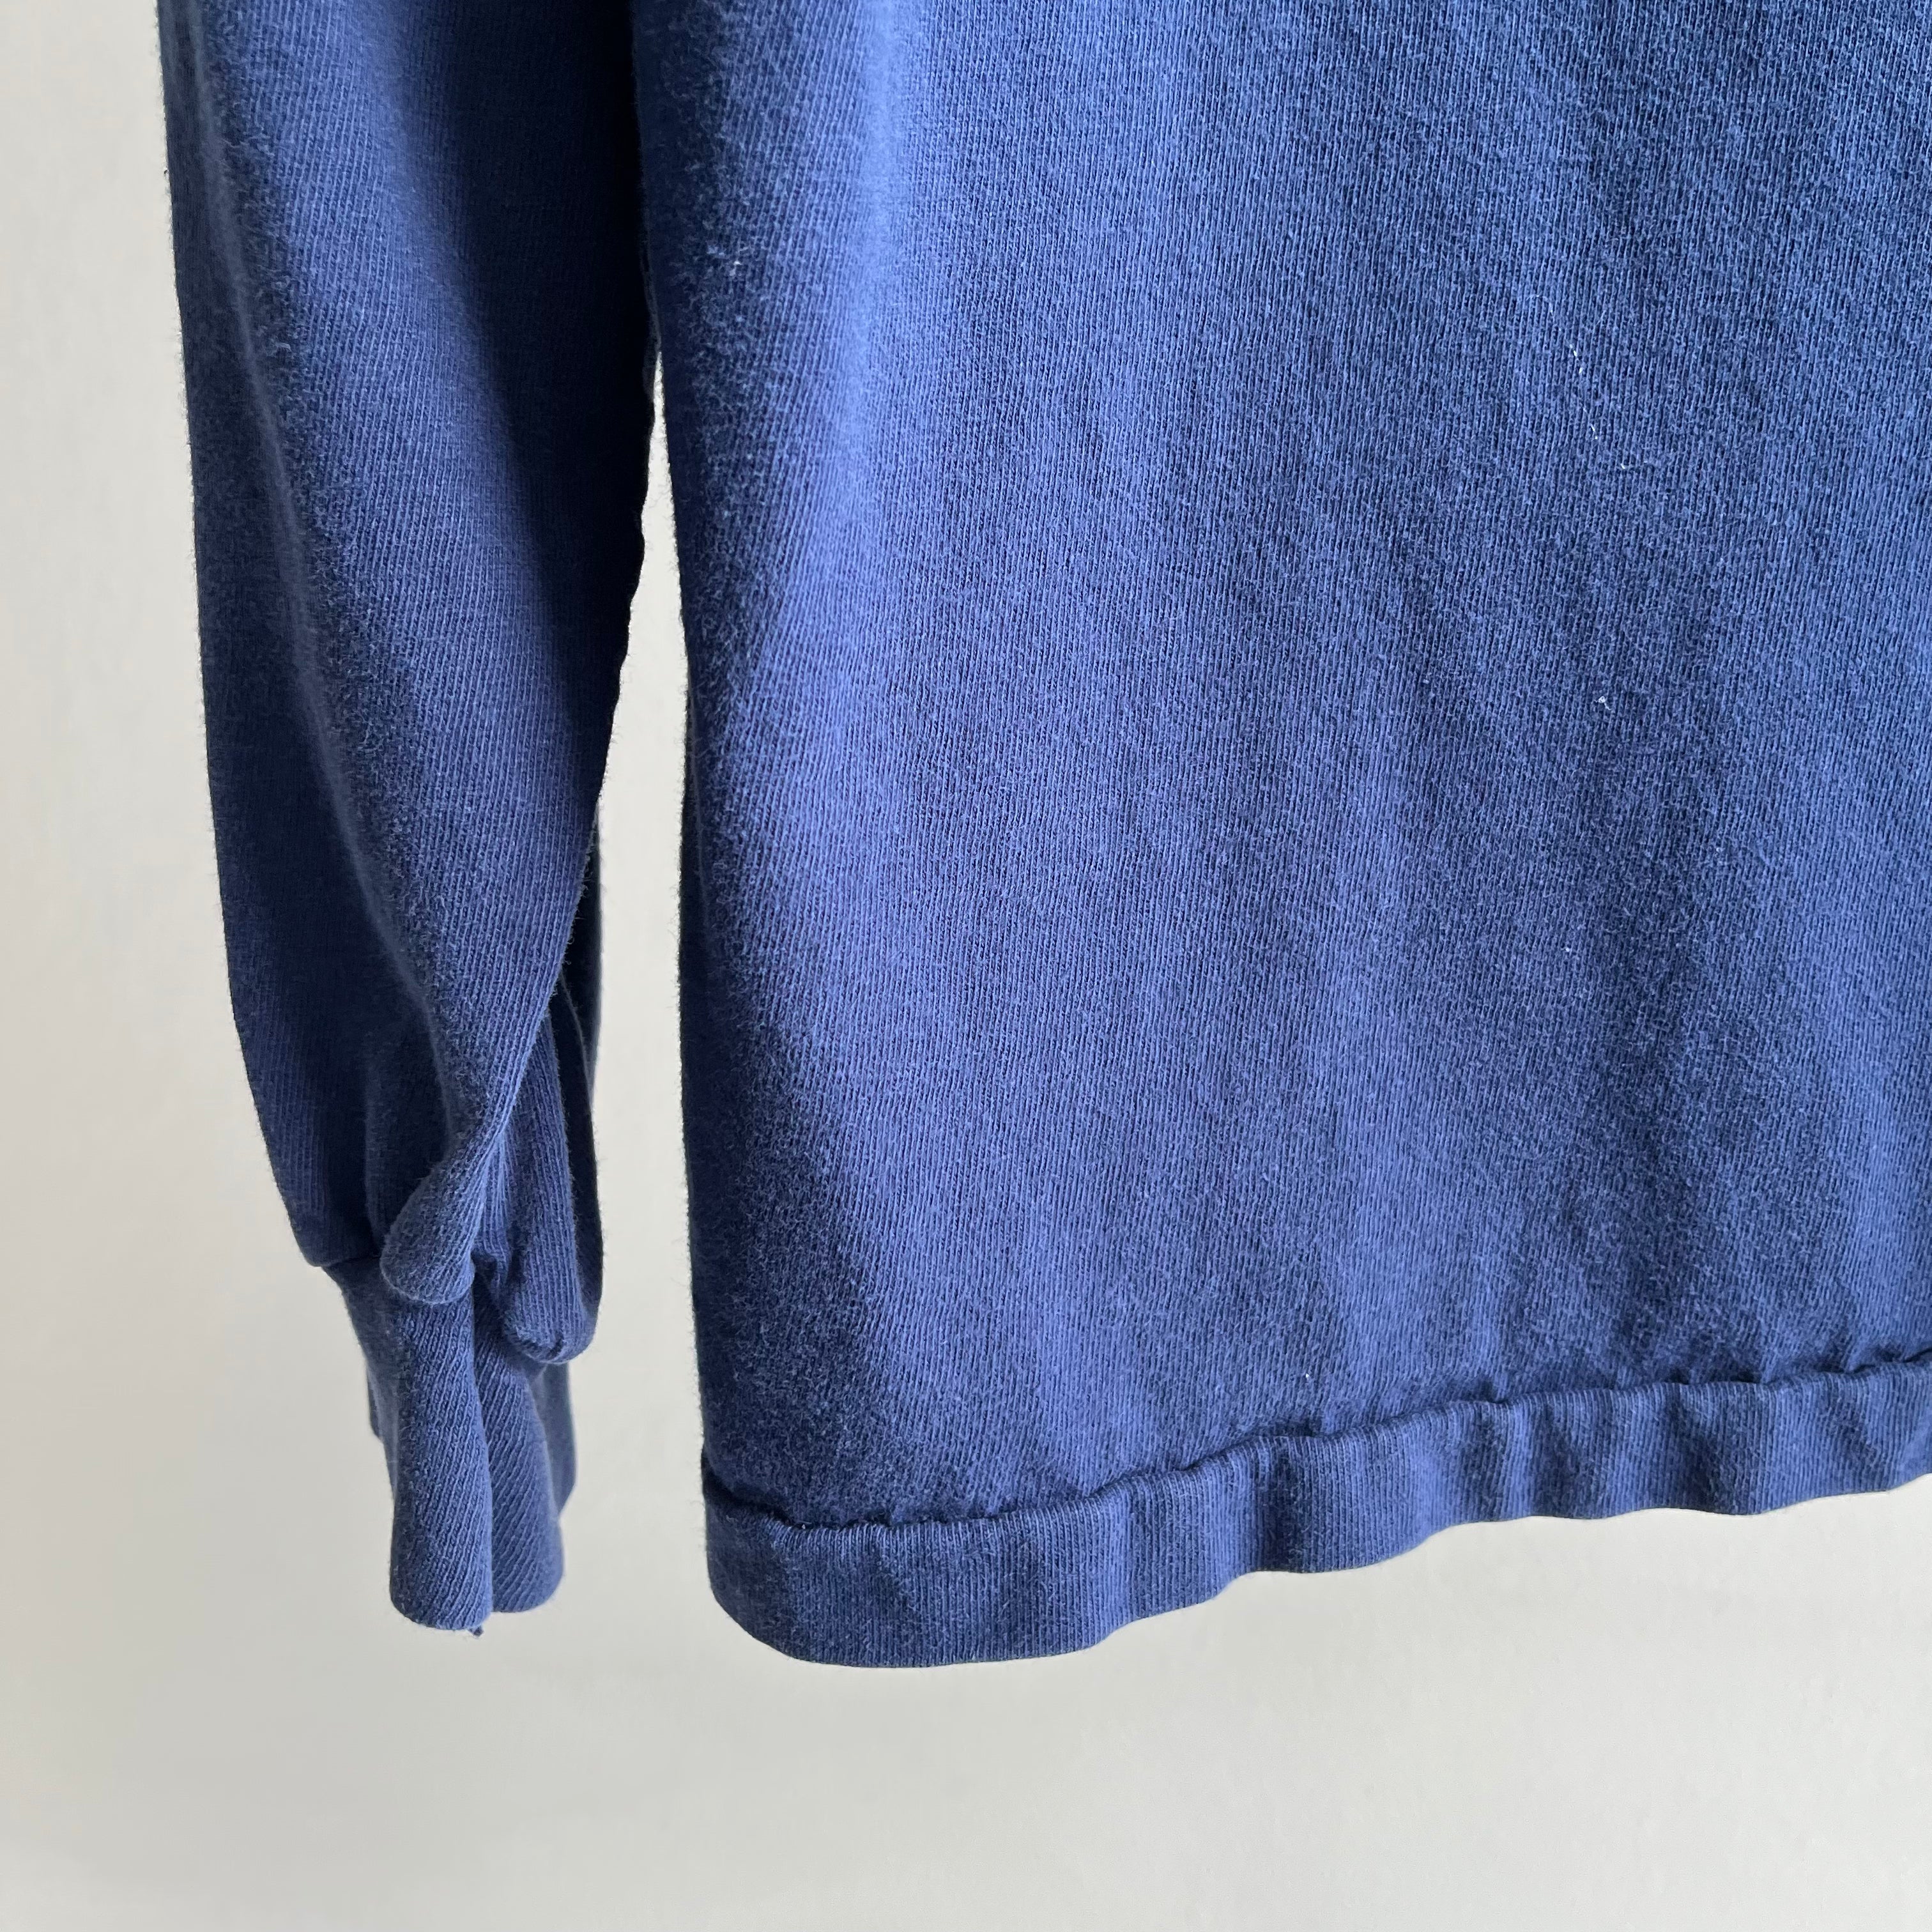 1980s Kansas Jayhawks Long Sleeve Cotton T-Shirt